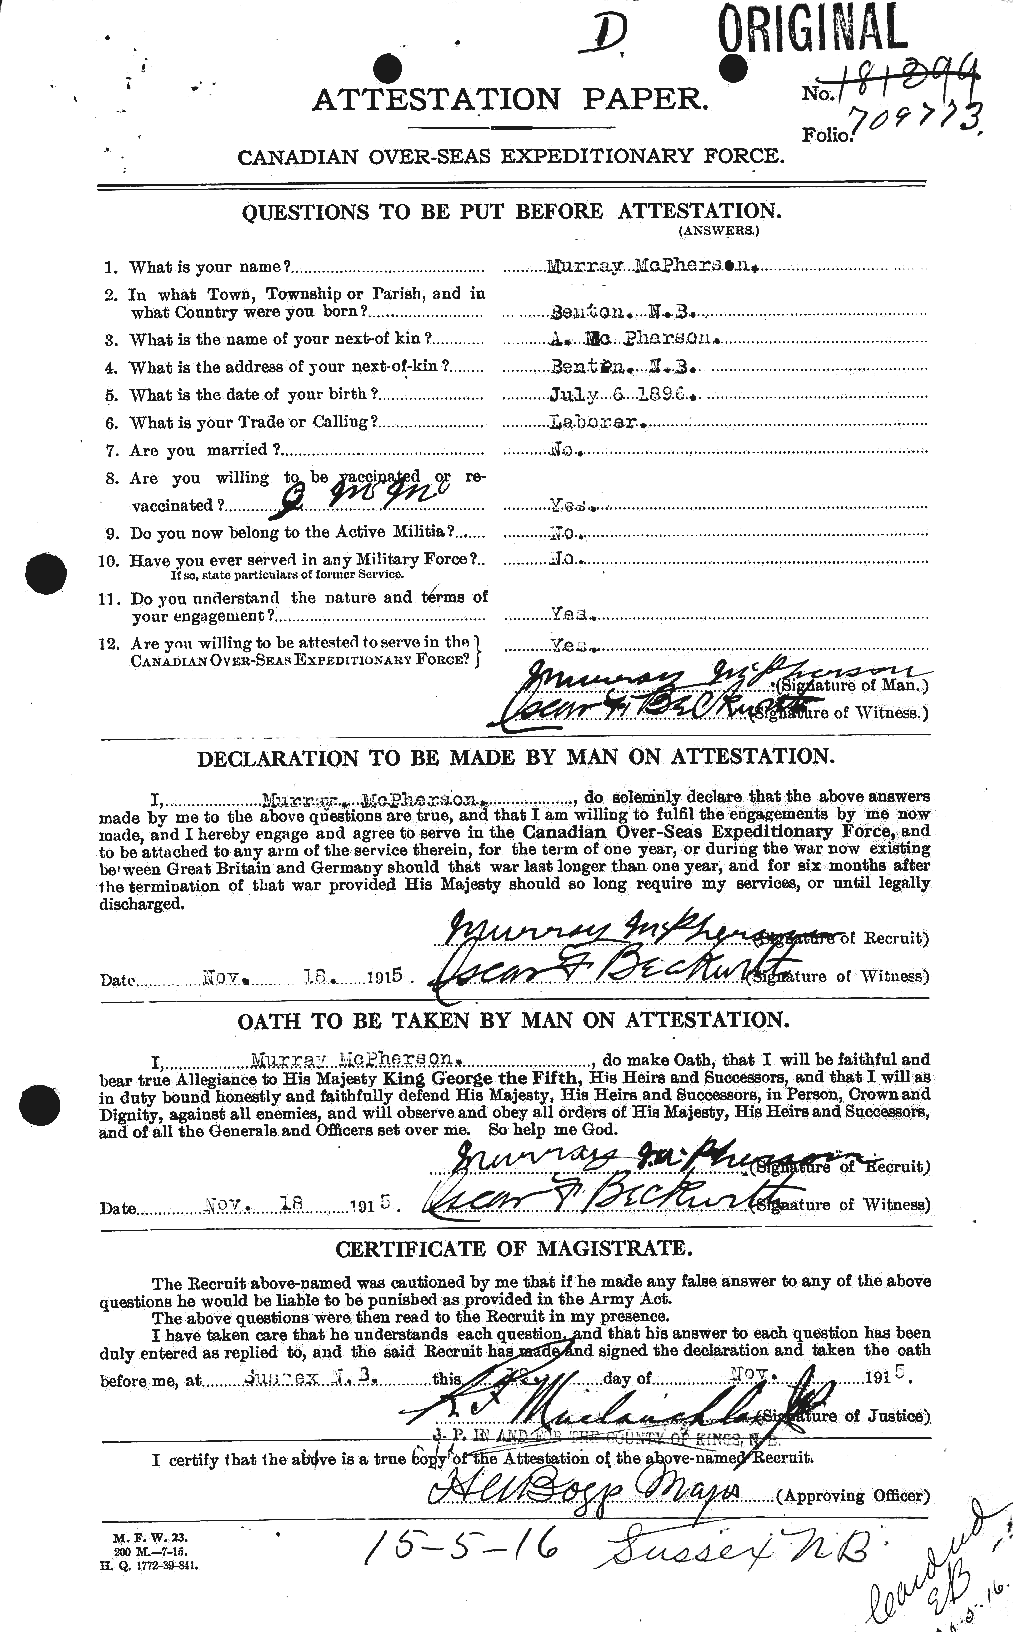 Dossiers du Personnel de la Première Guerre mondiale - CEC 543213a